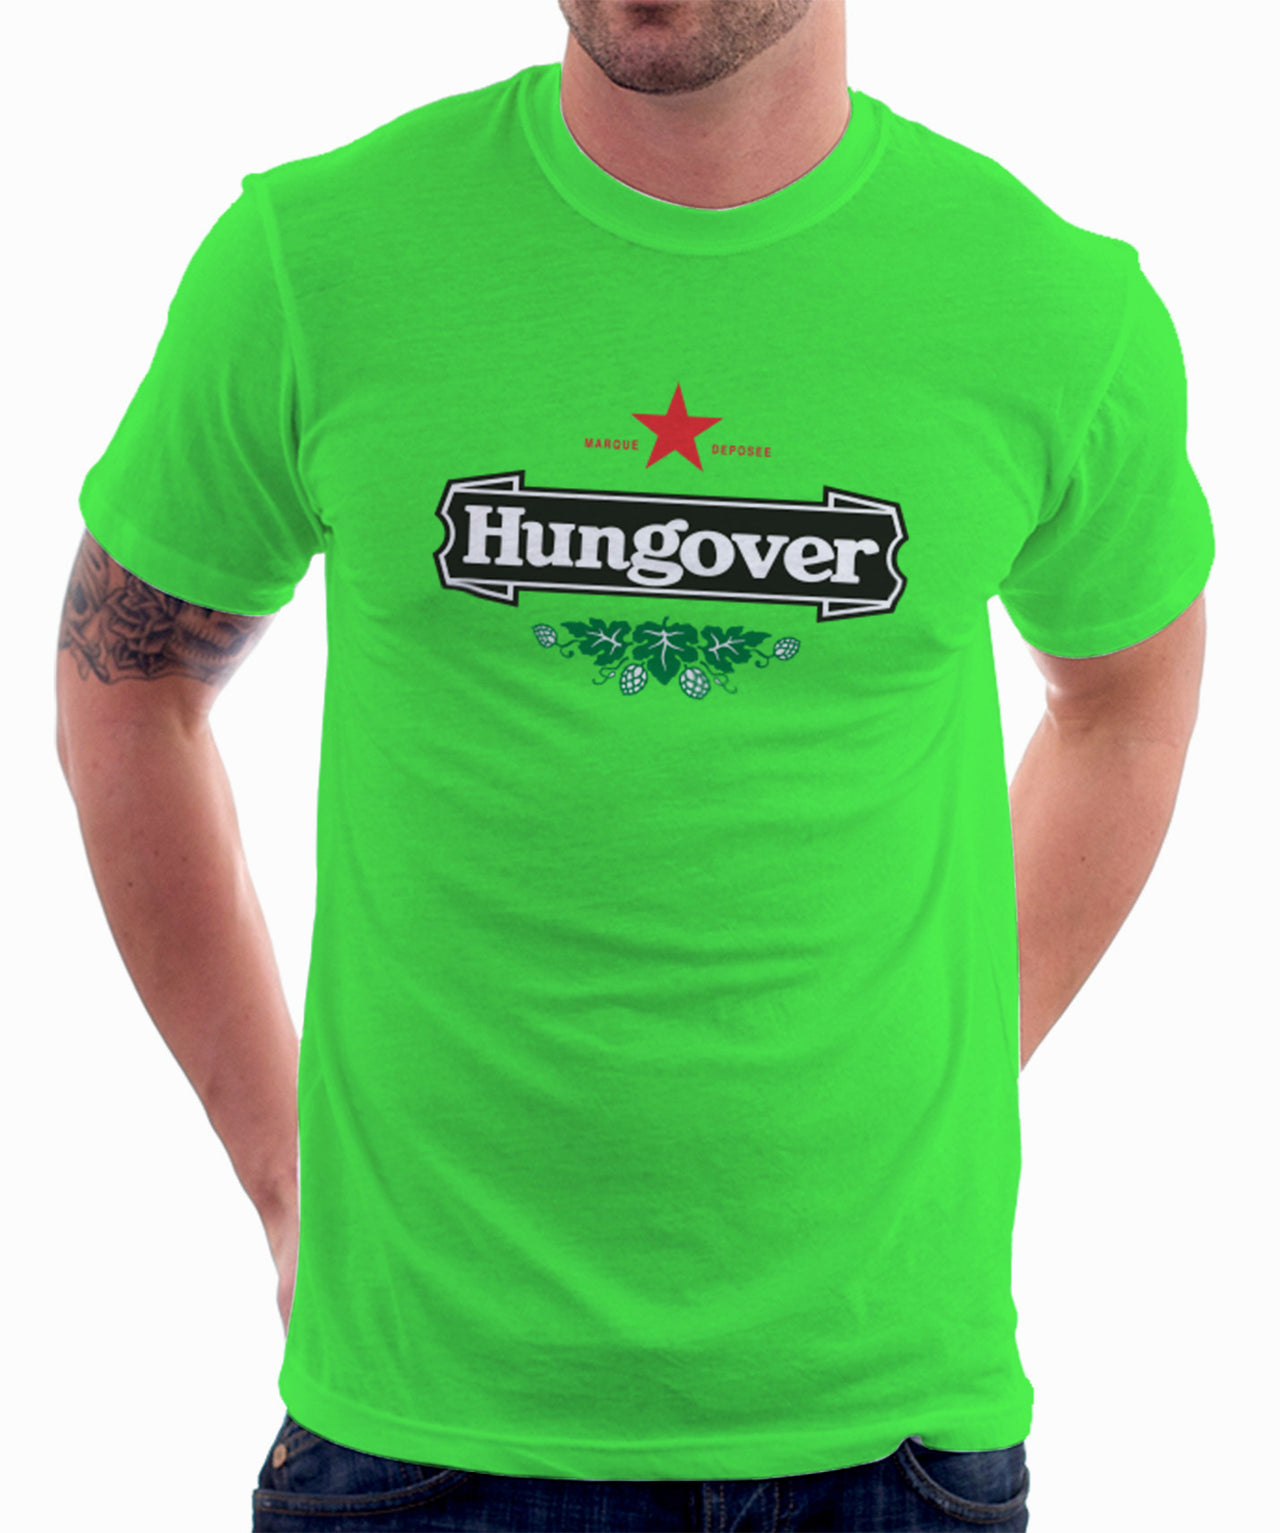 Hangover Green T-shirt - TshirtNow.net - 1